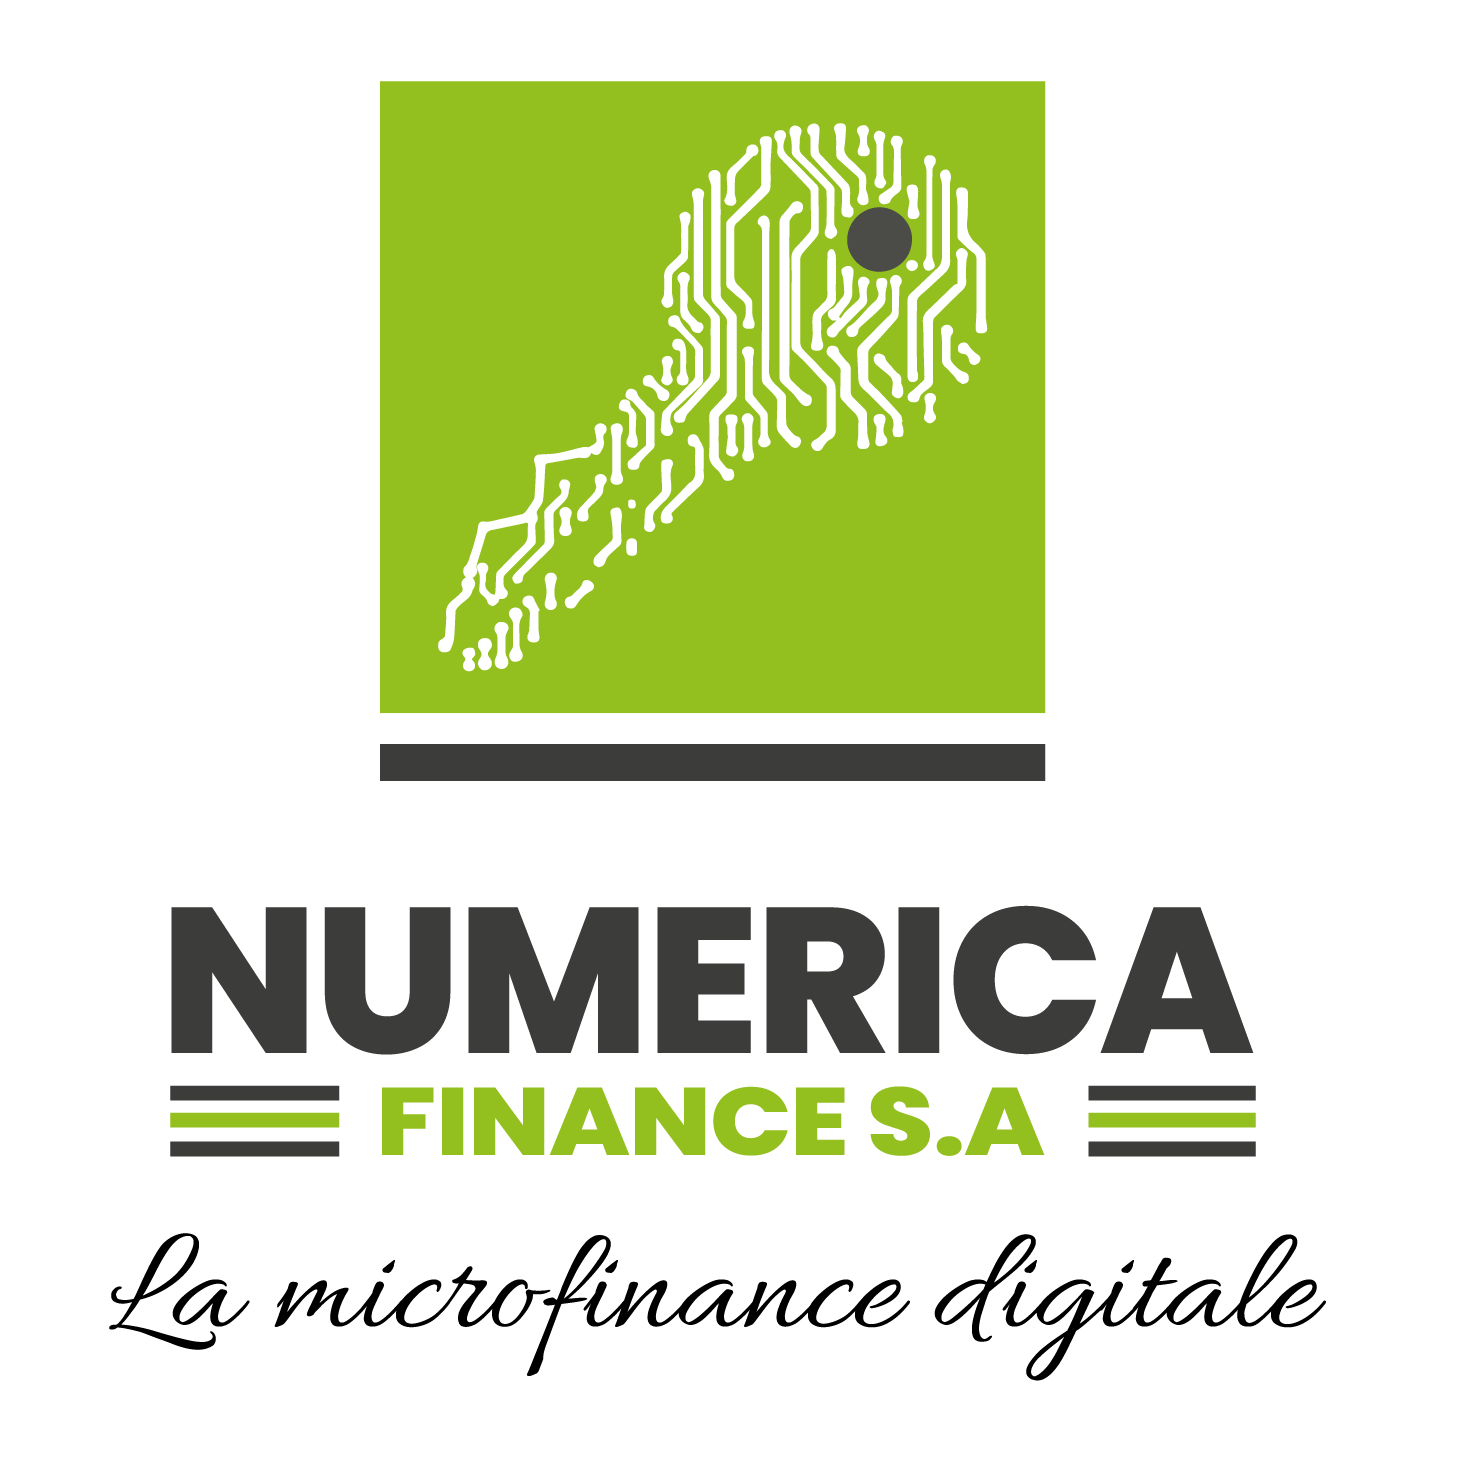 New Logo Nuùerica